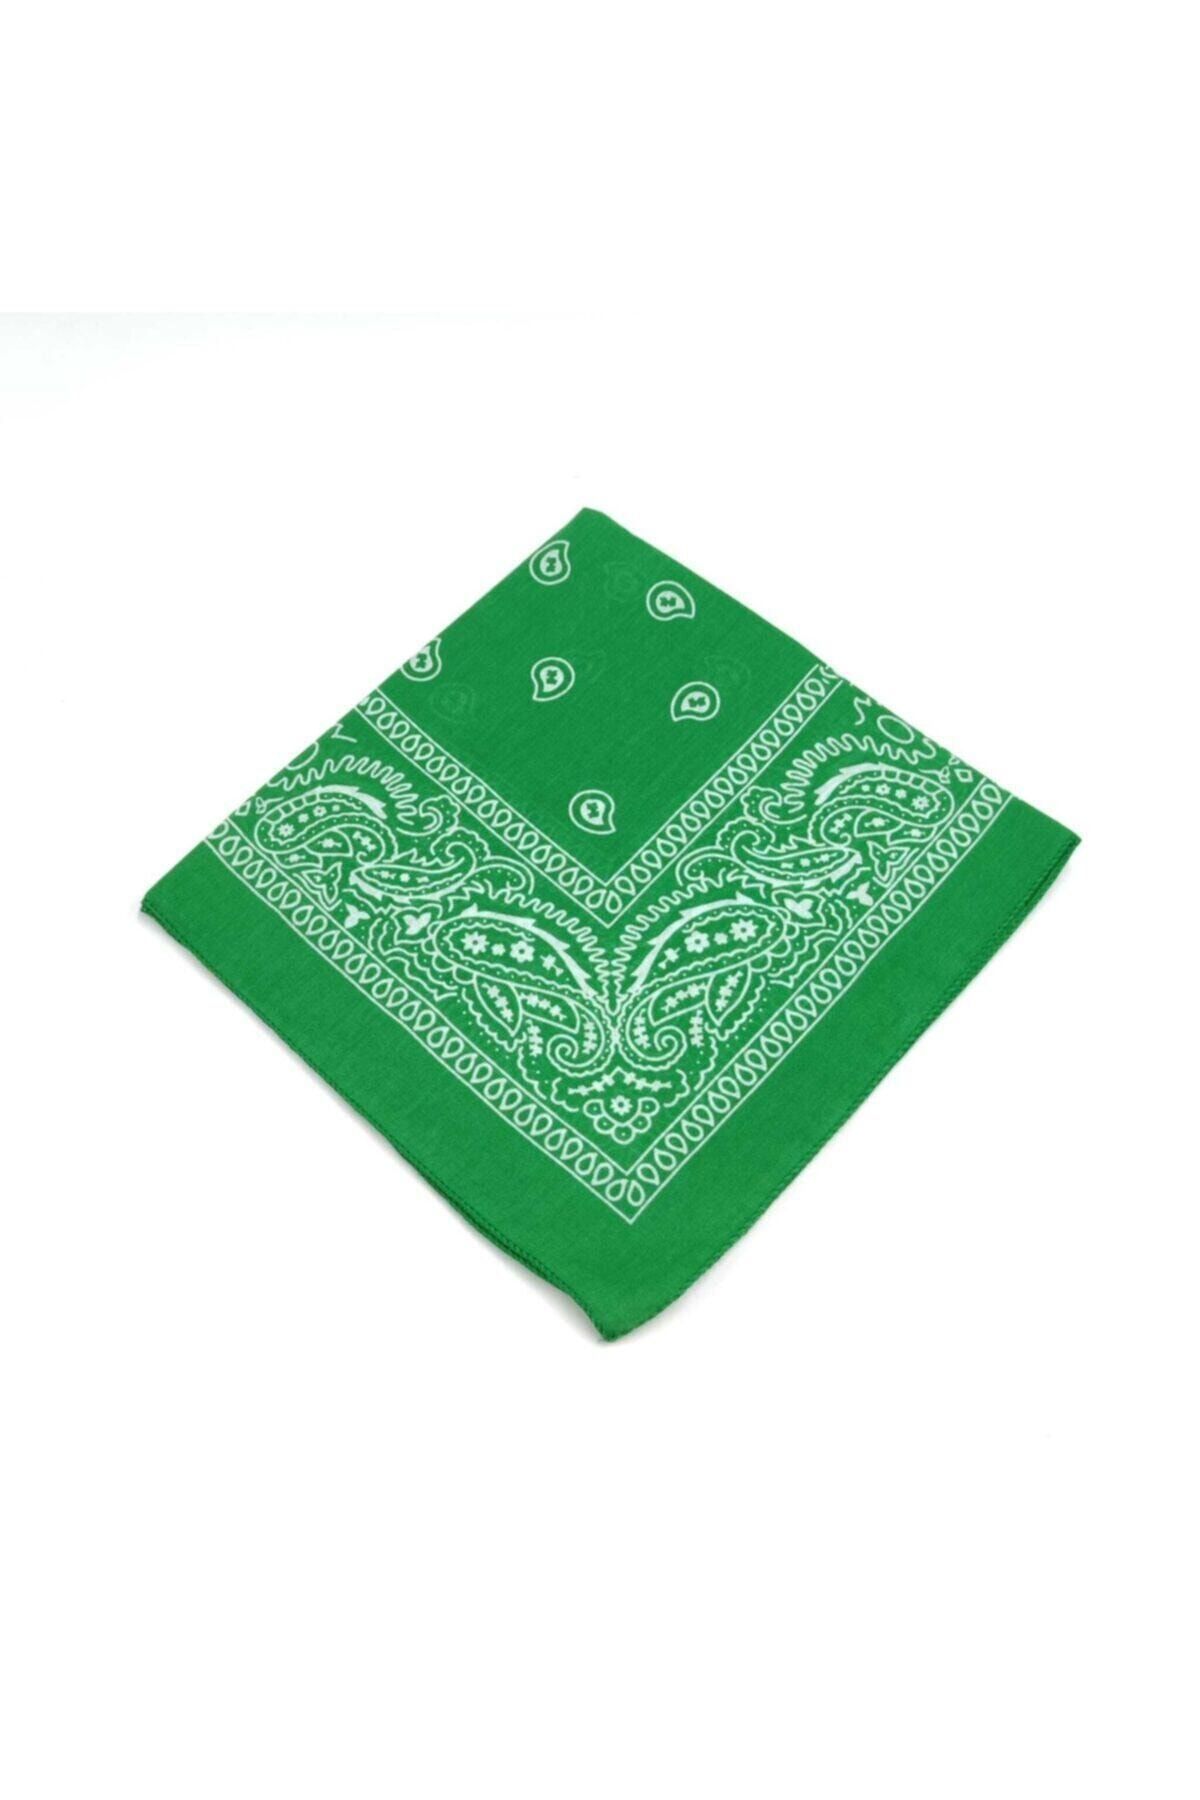 Fular Marketi 5 Al 4 Öde Kampanyalı %100 Pamuk Fular Bandana Benetton Yeşili